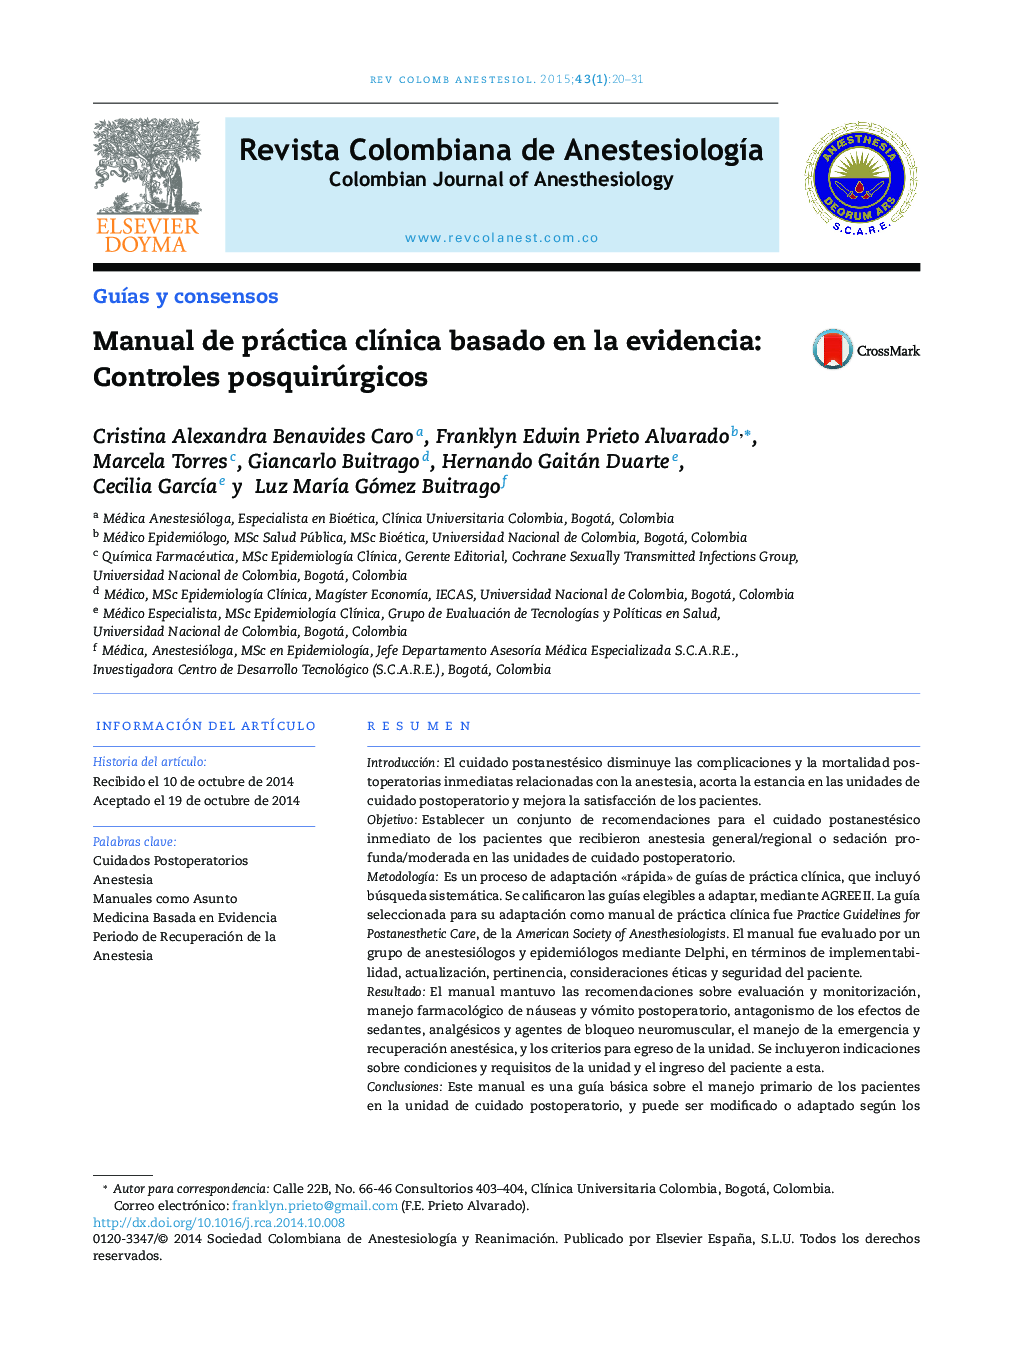 Manual de práctica clínica basado en la evidencia: Controles posquirúrgicos